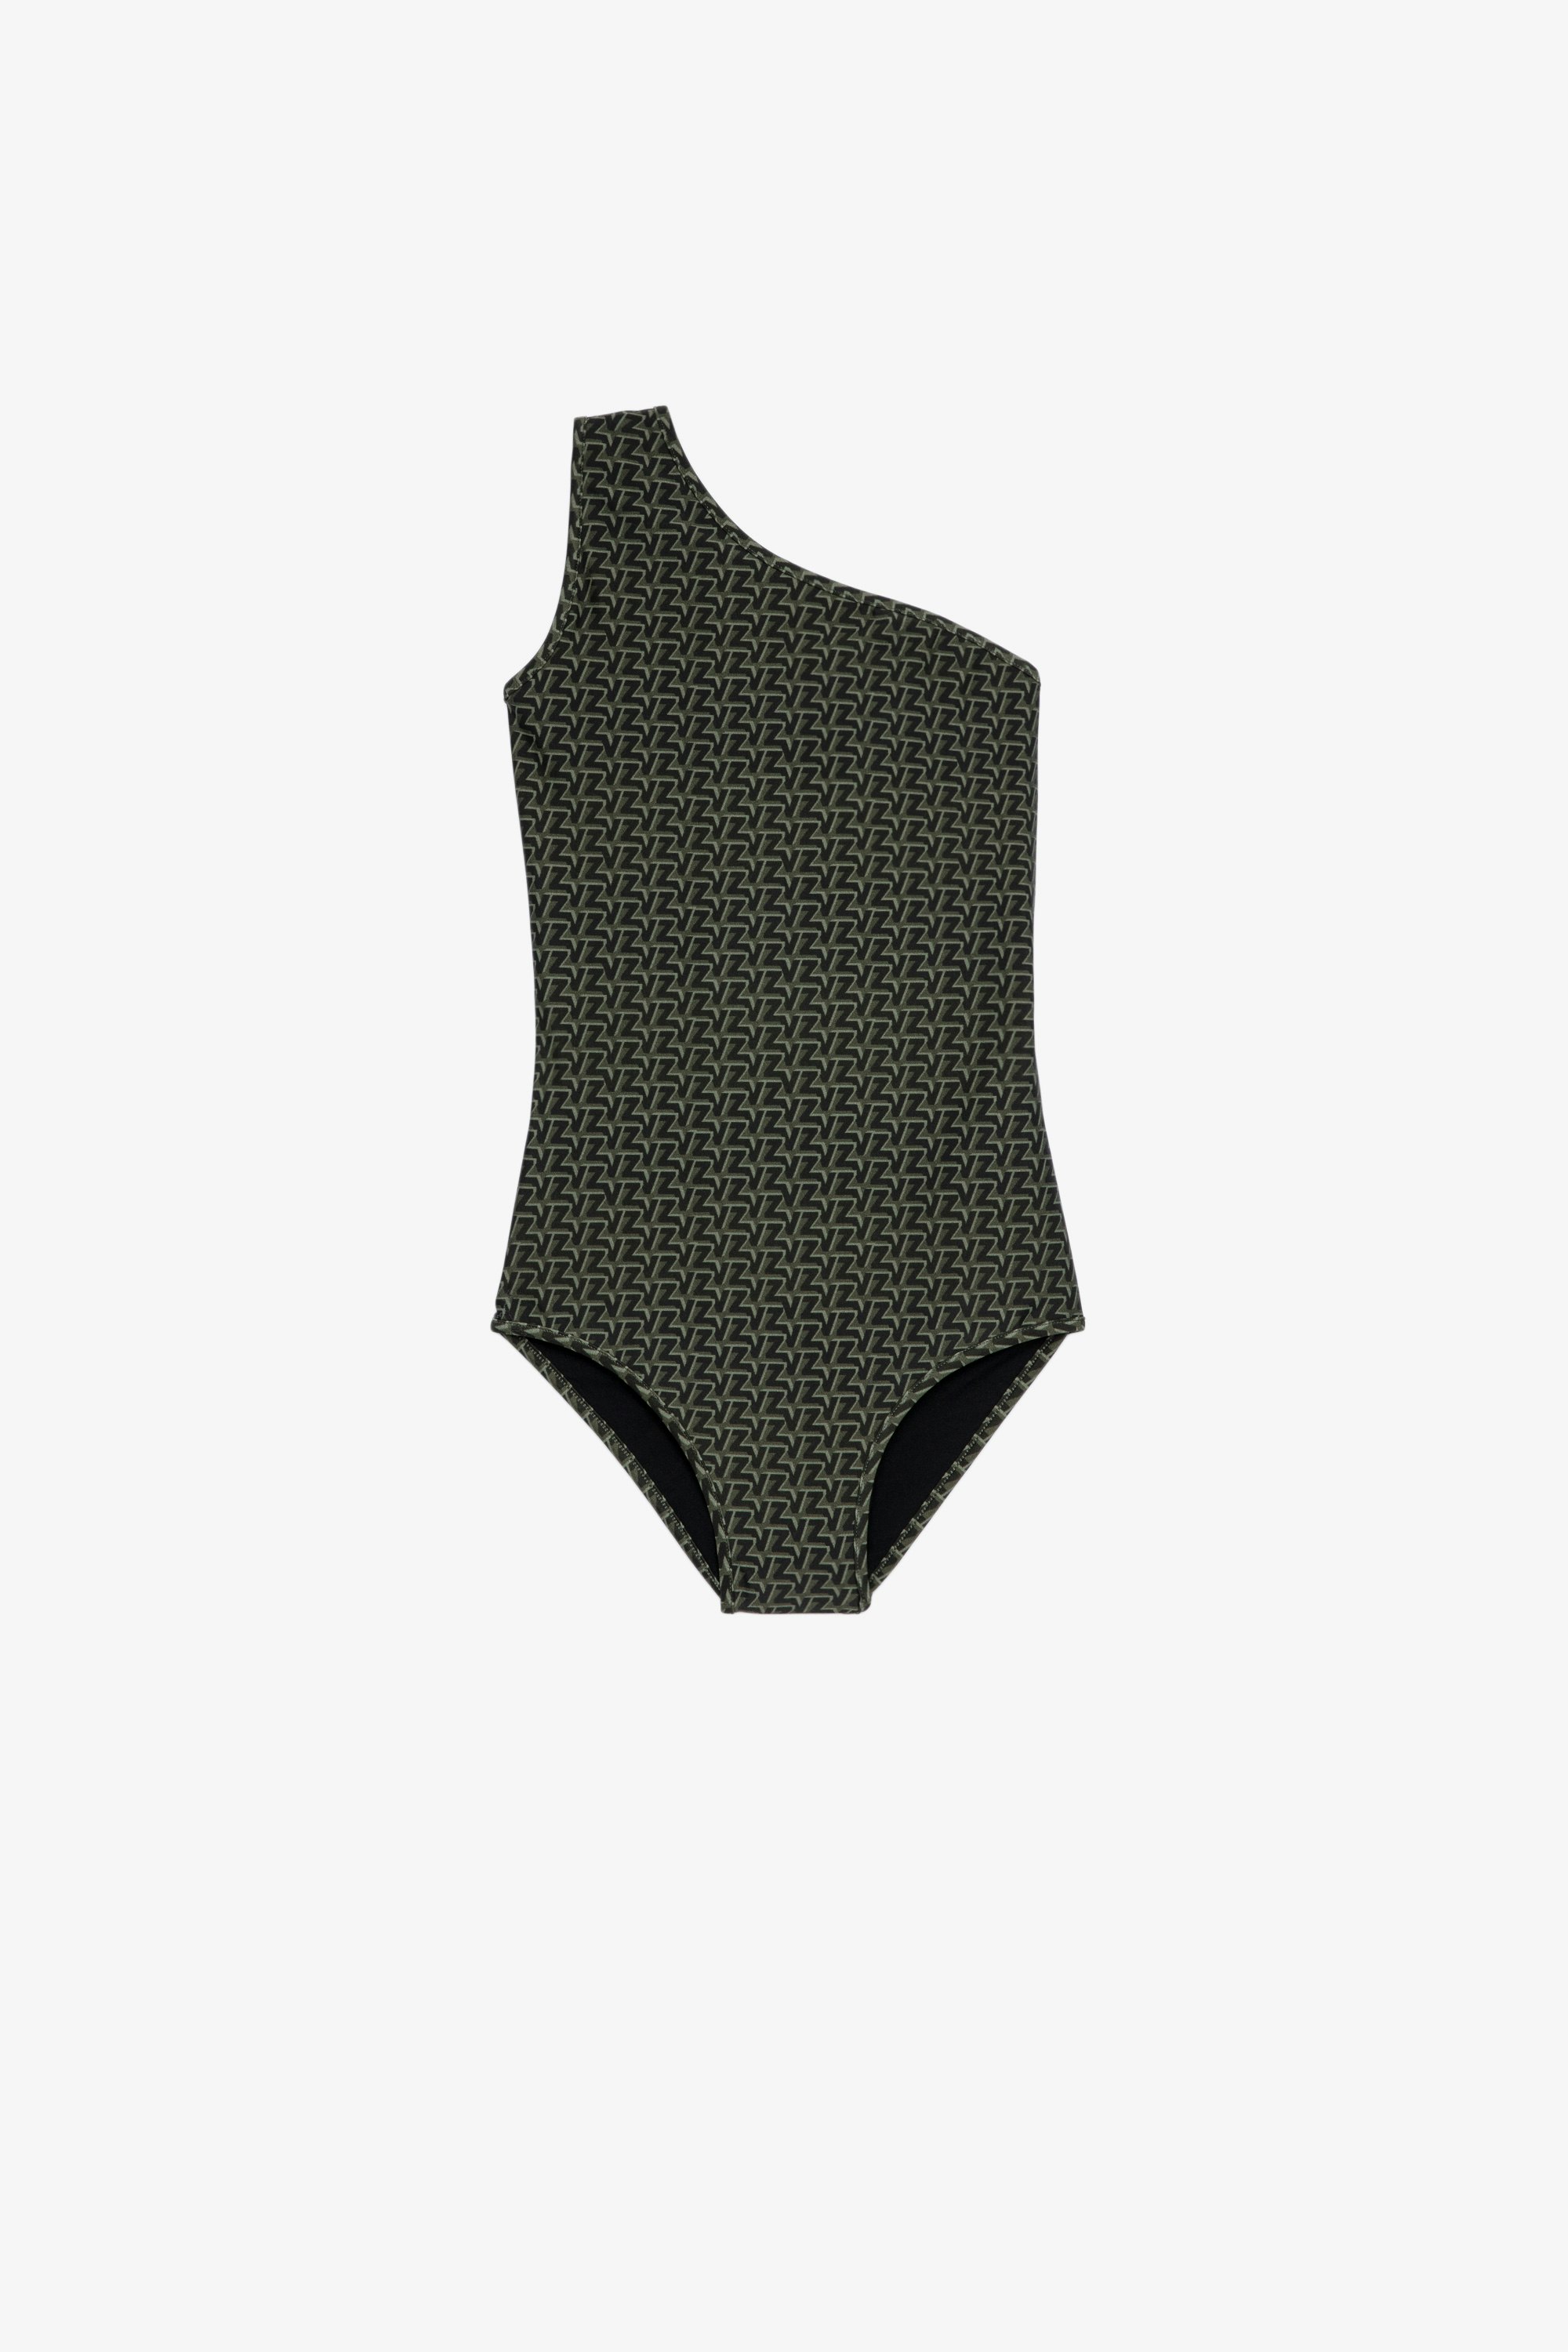 Monogrammed swimsuit 1-piece women's swimsuit in khaki